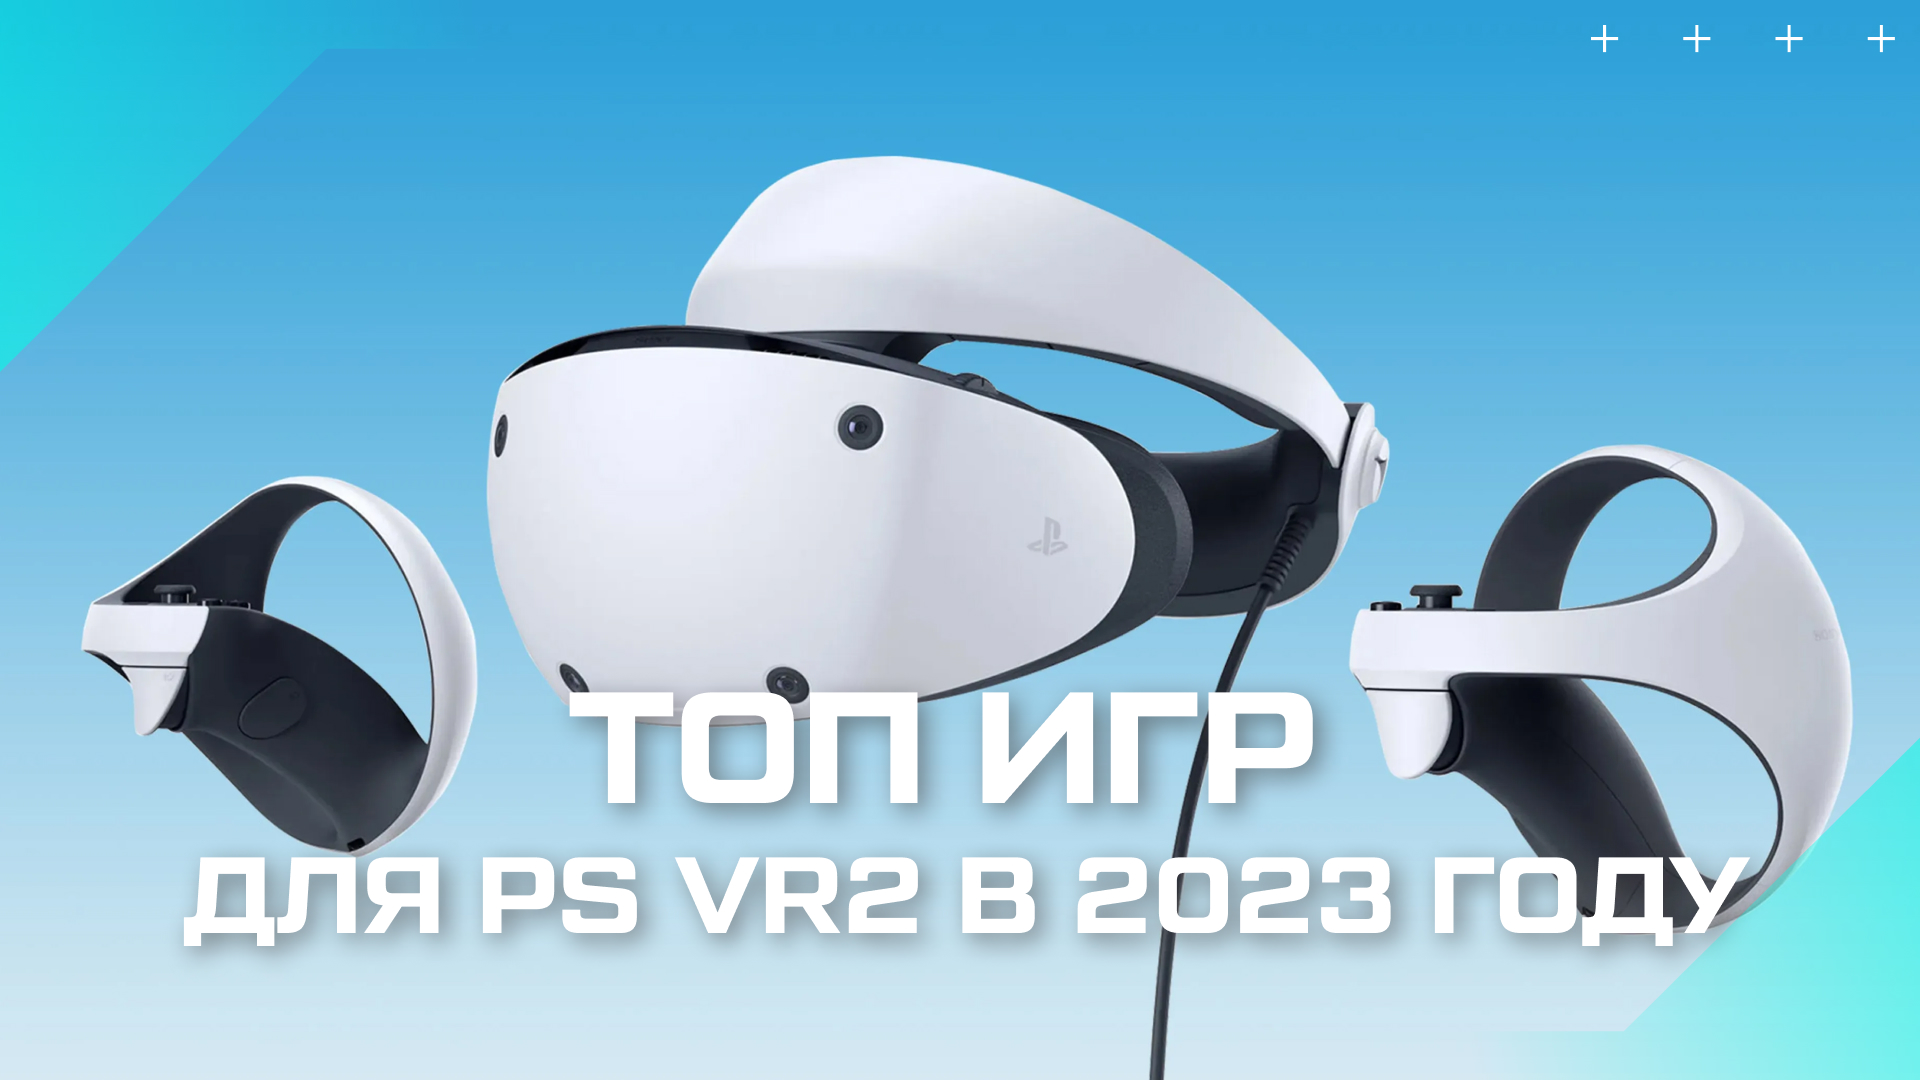 Очки пс вр. Шлем Sony PLAYSTATION VR 2. VR шлем Sony ps4. Очки Sony PLAYSTATION vr2. Очки виртуальной реальности Sony PLAYSTATION vr2.